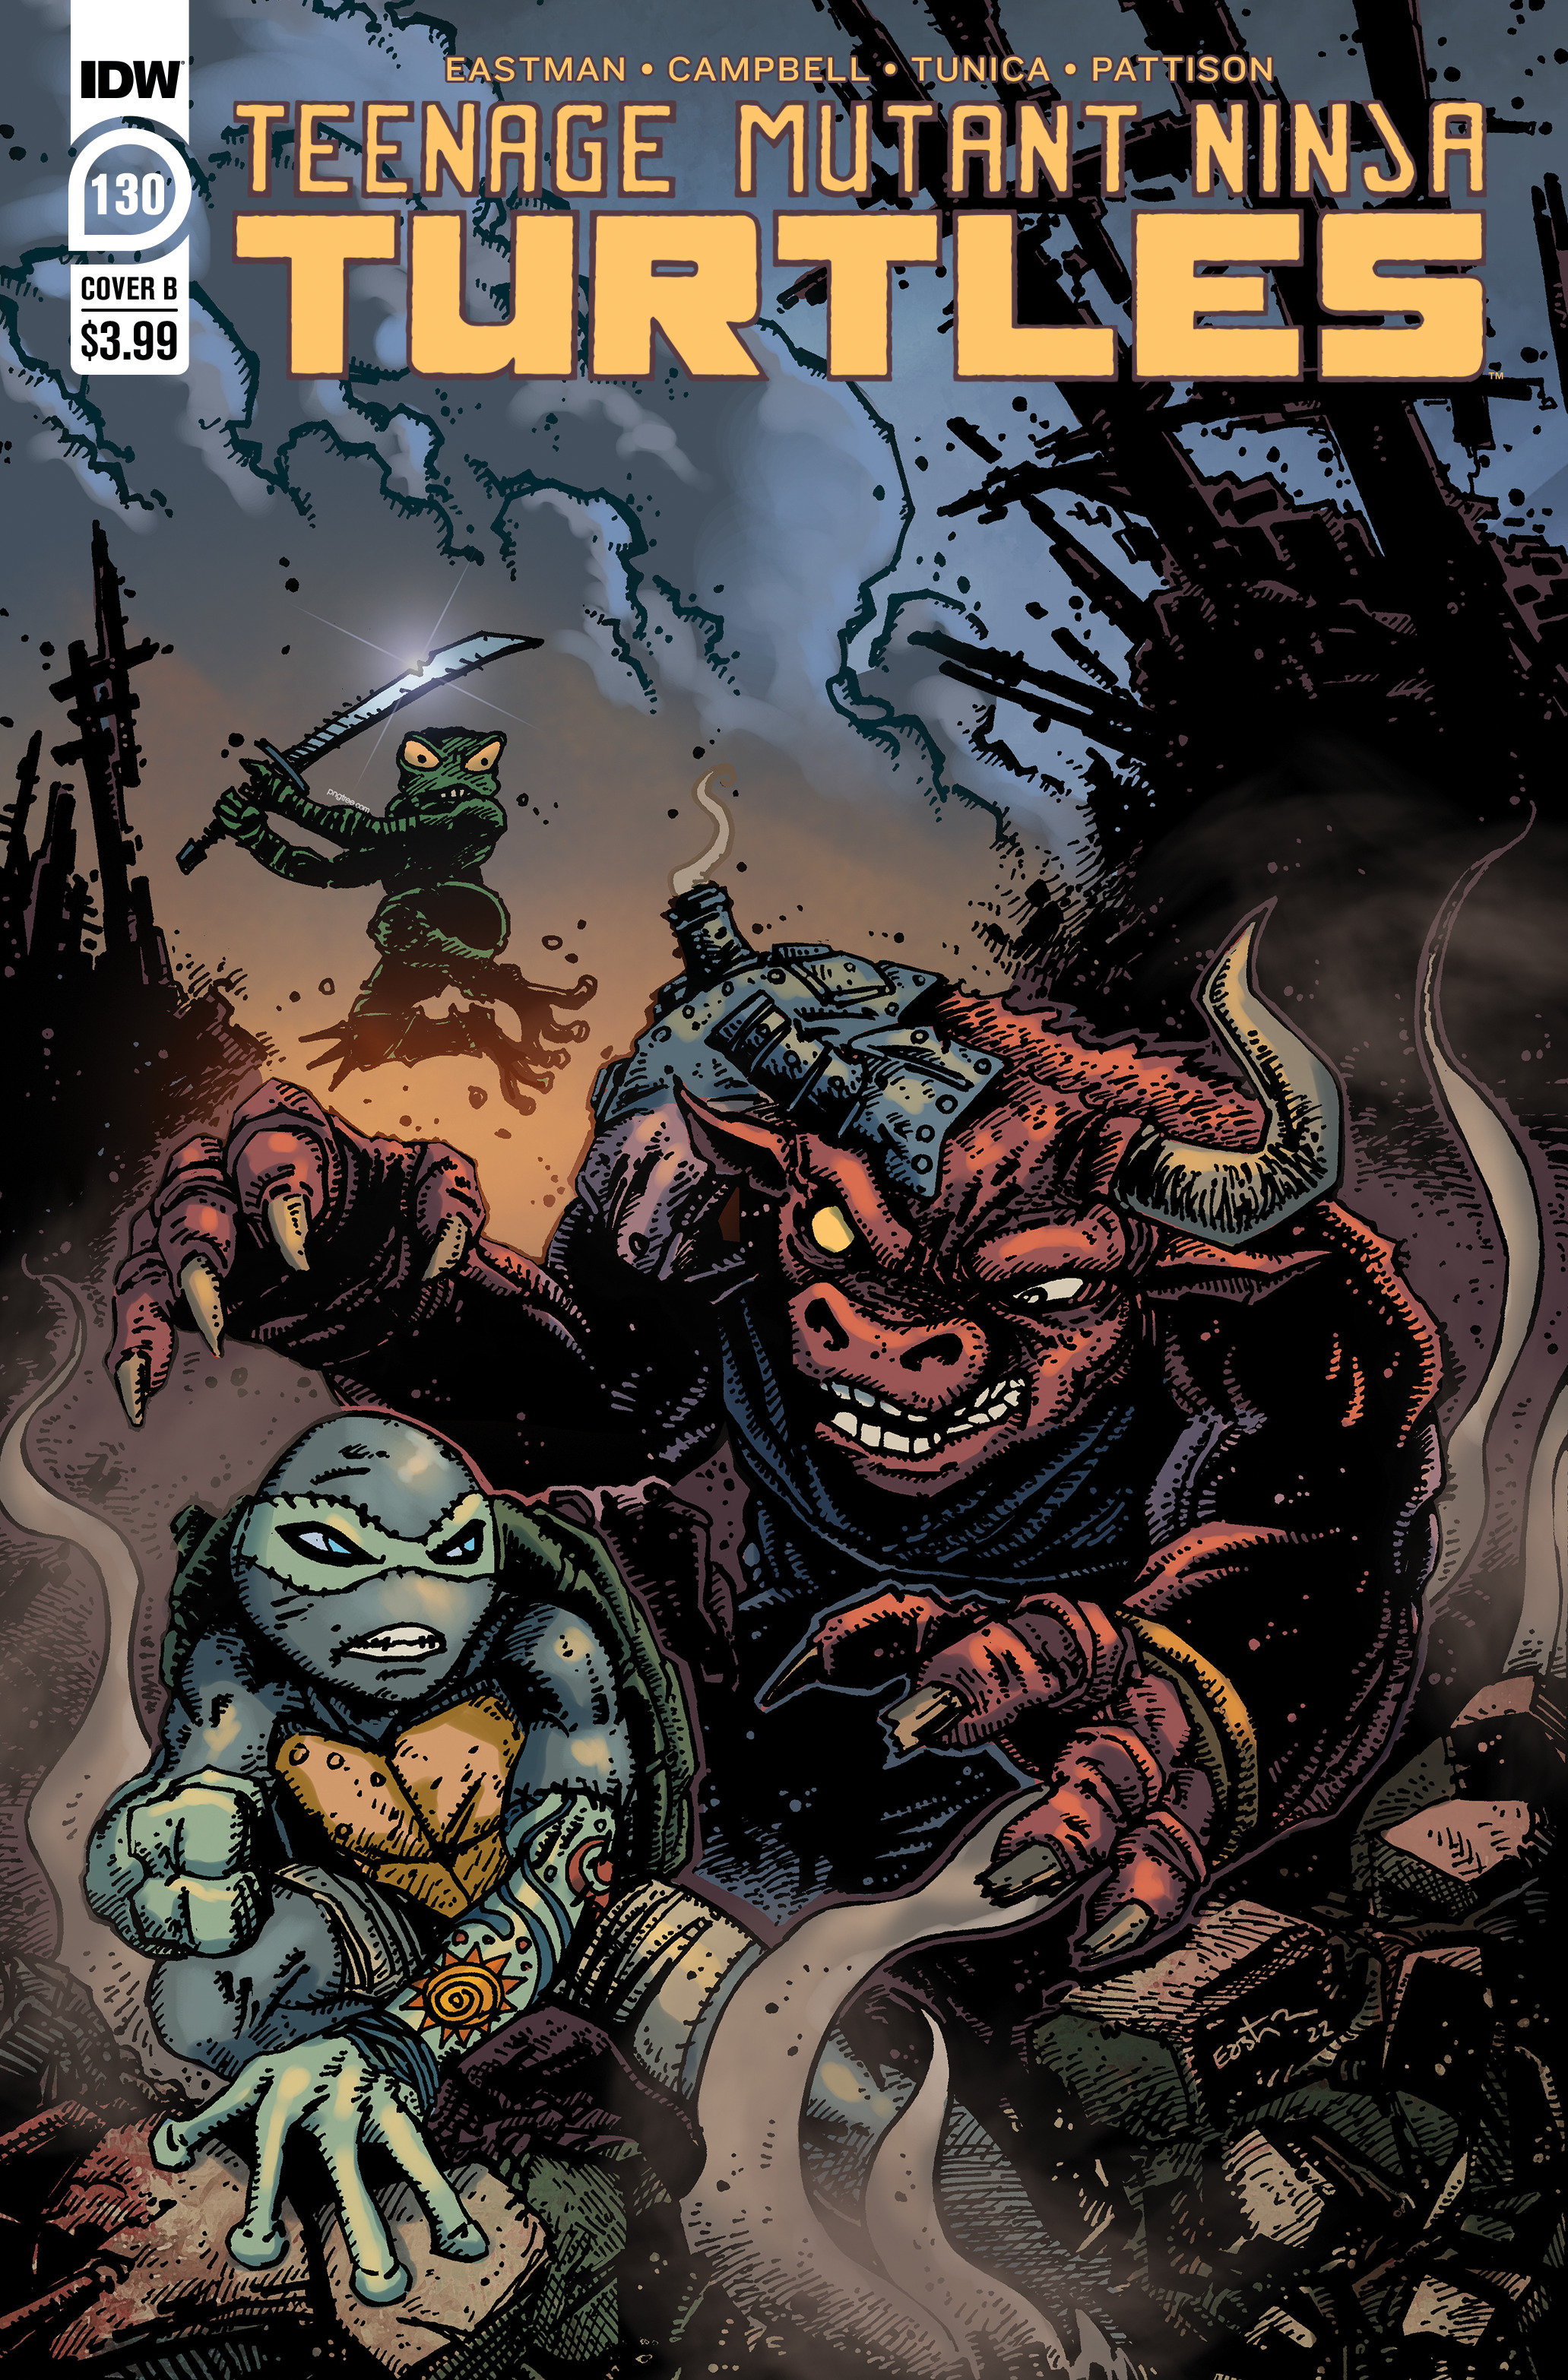 Teenage Mutant Ninja Turtles Ongoing #130 Cover B Eastman (2011)